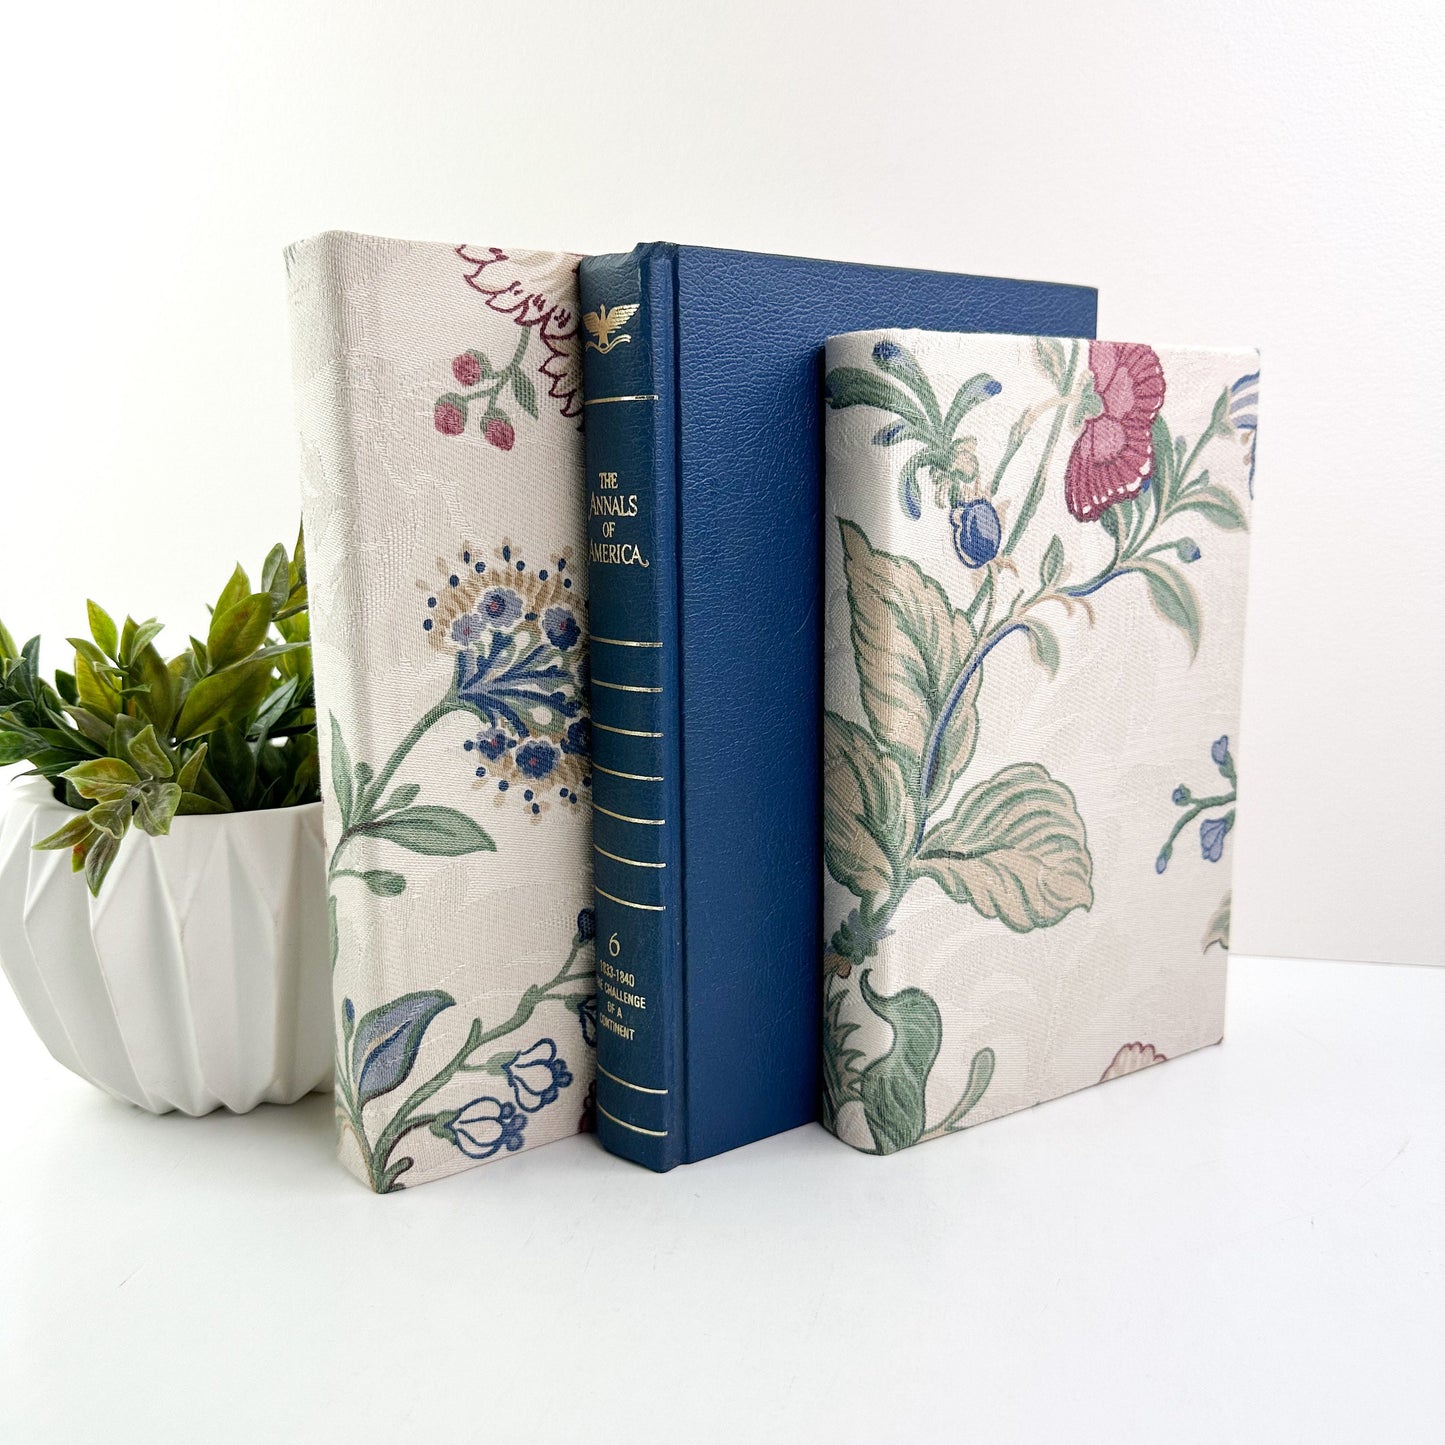 Blue decorative Books for Living Room Decor, Book Set for Shelf Decor, Book Bundle, Table Decor